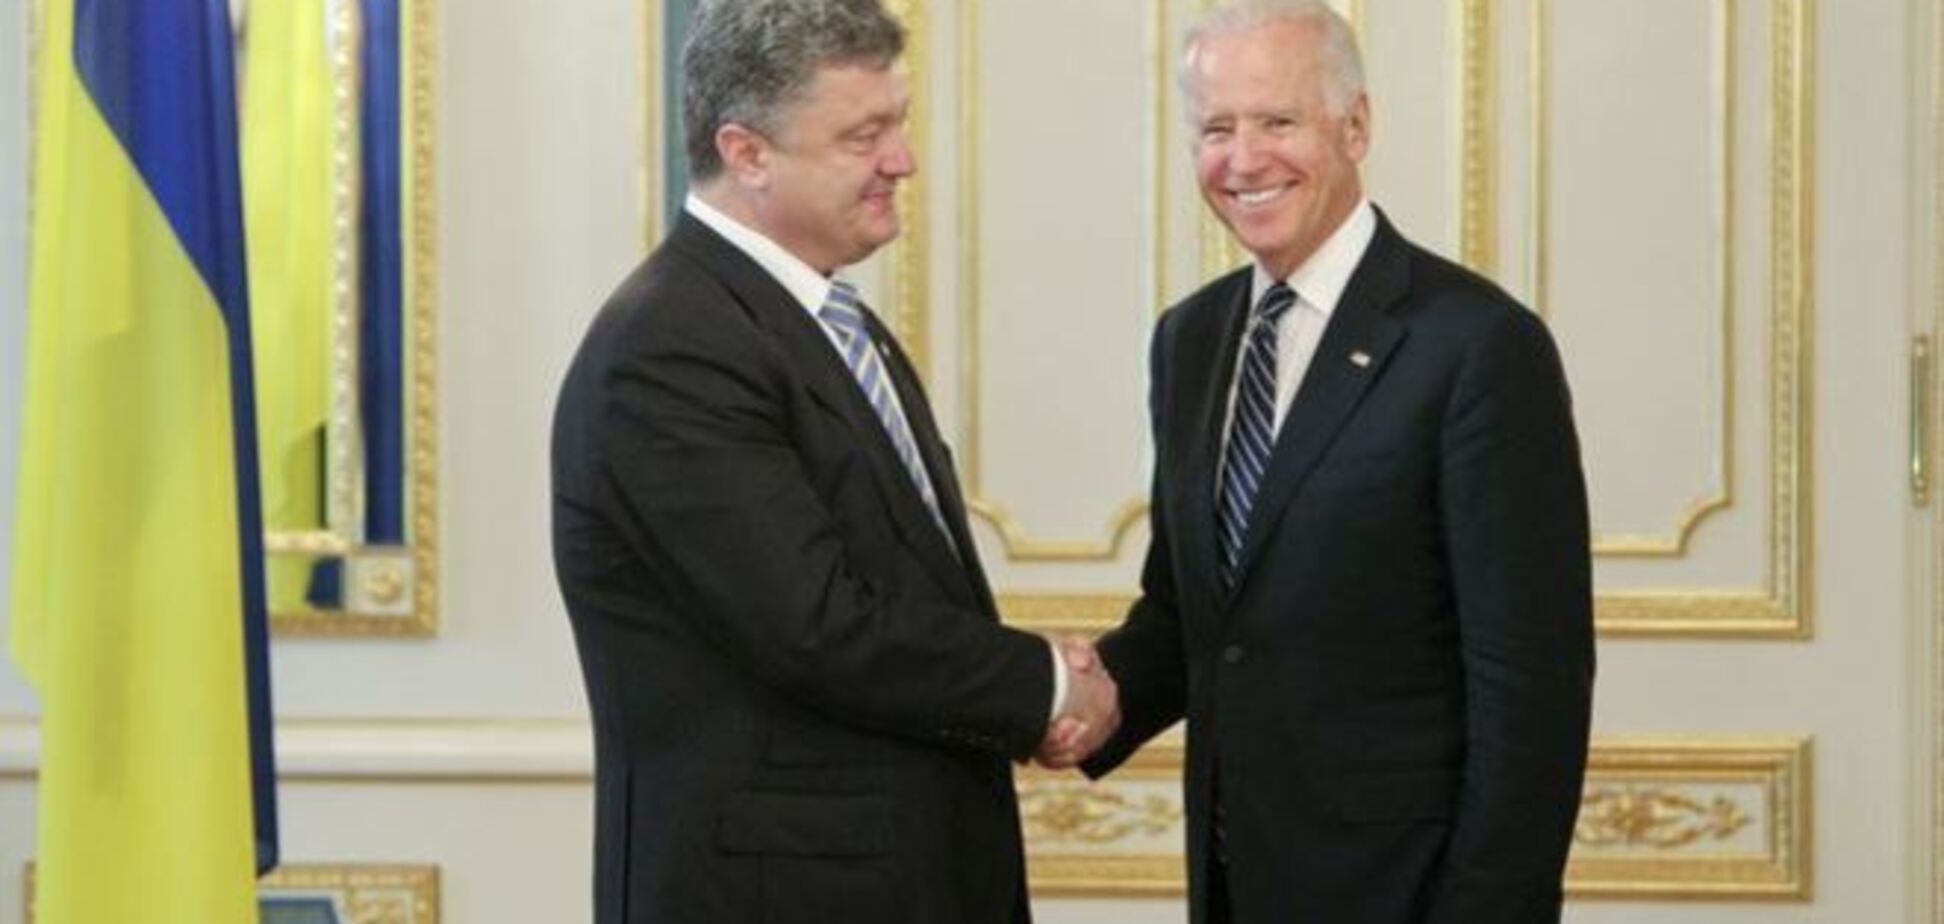 Визит Байдена в Украину будет посвящен усилению украинской армии - Фесенко